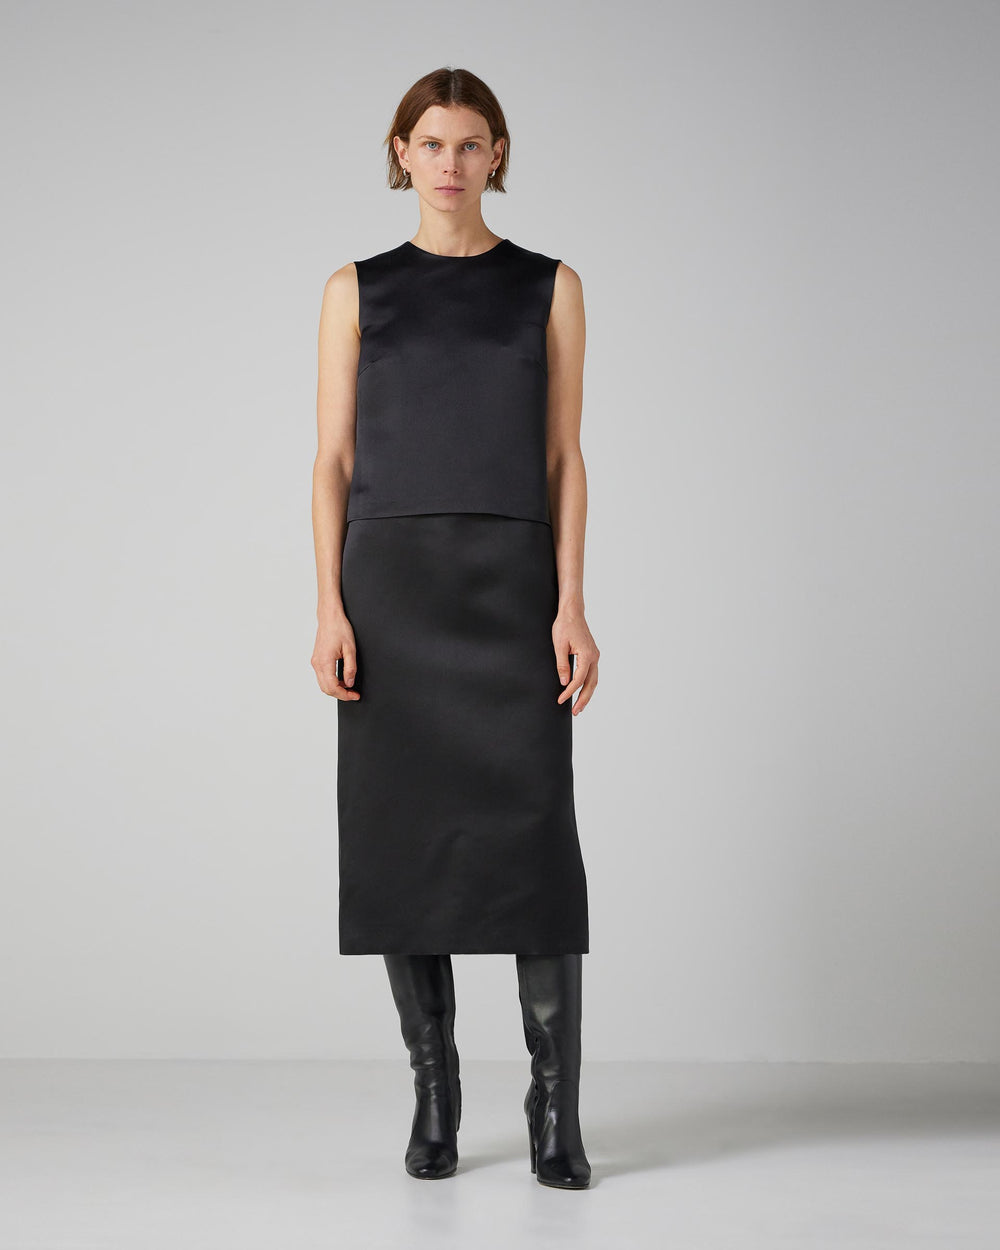 Nova Skirt in Duchess Silk, Black